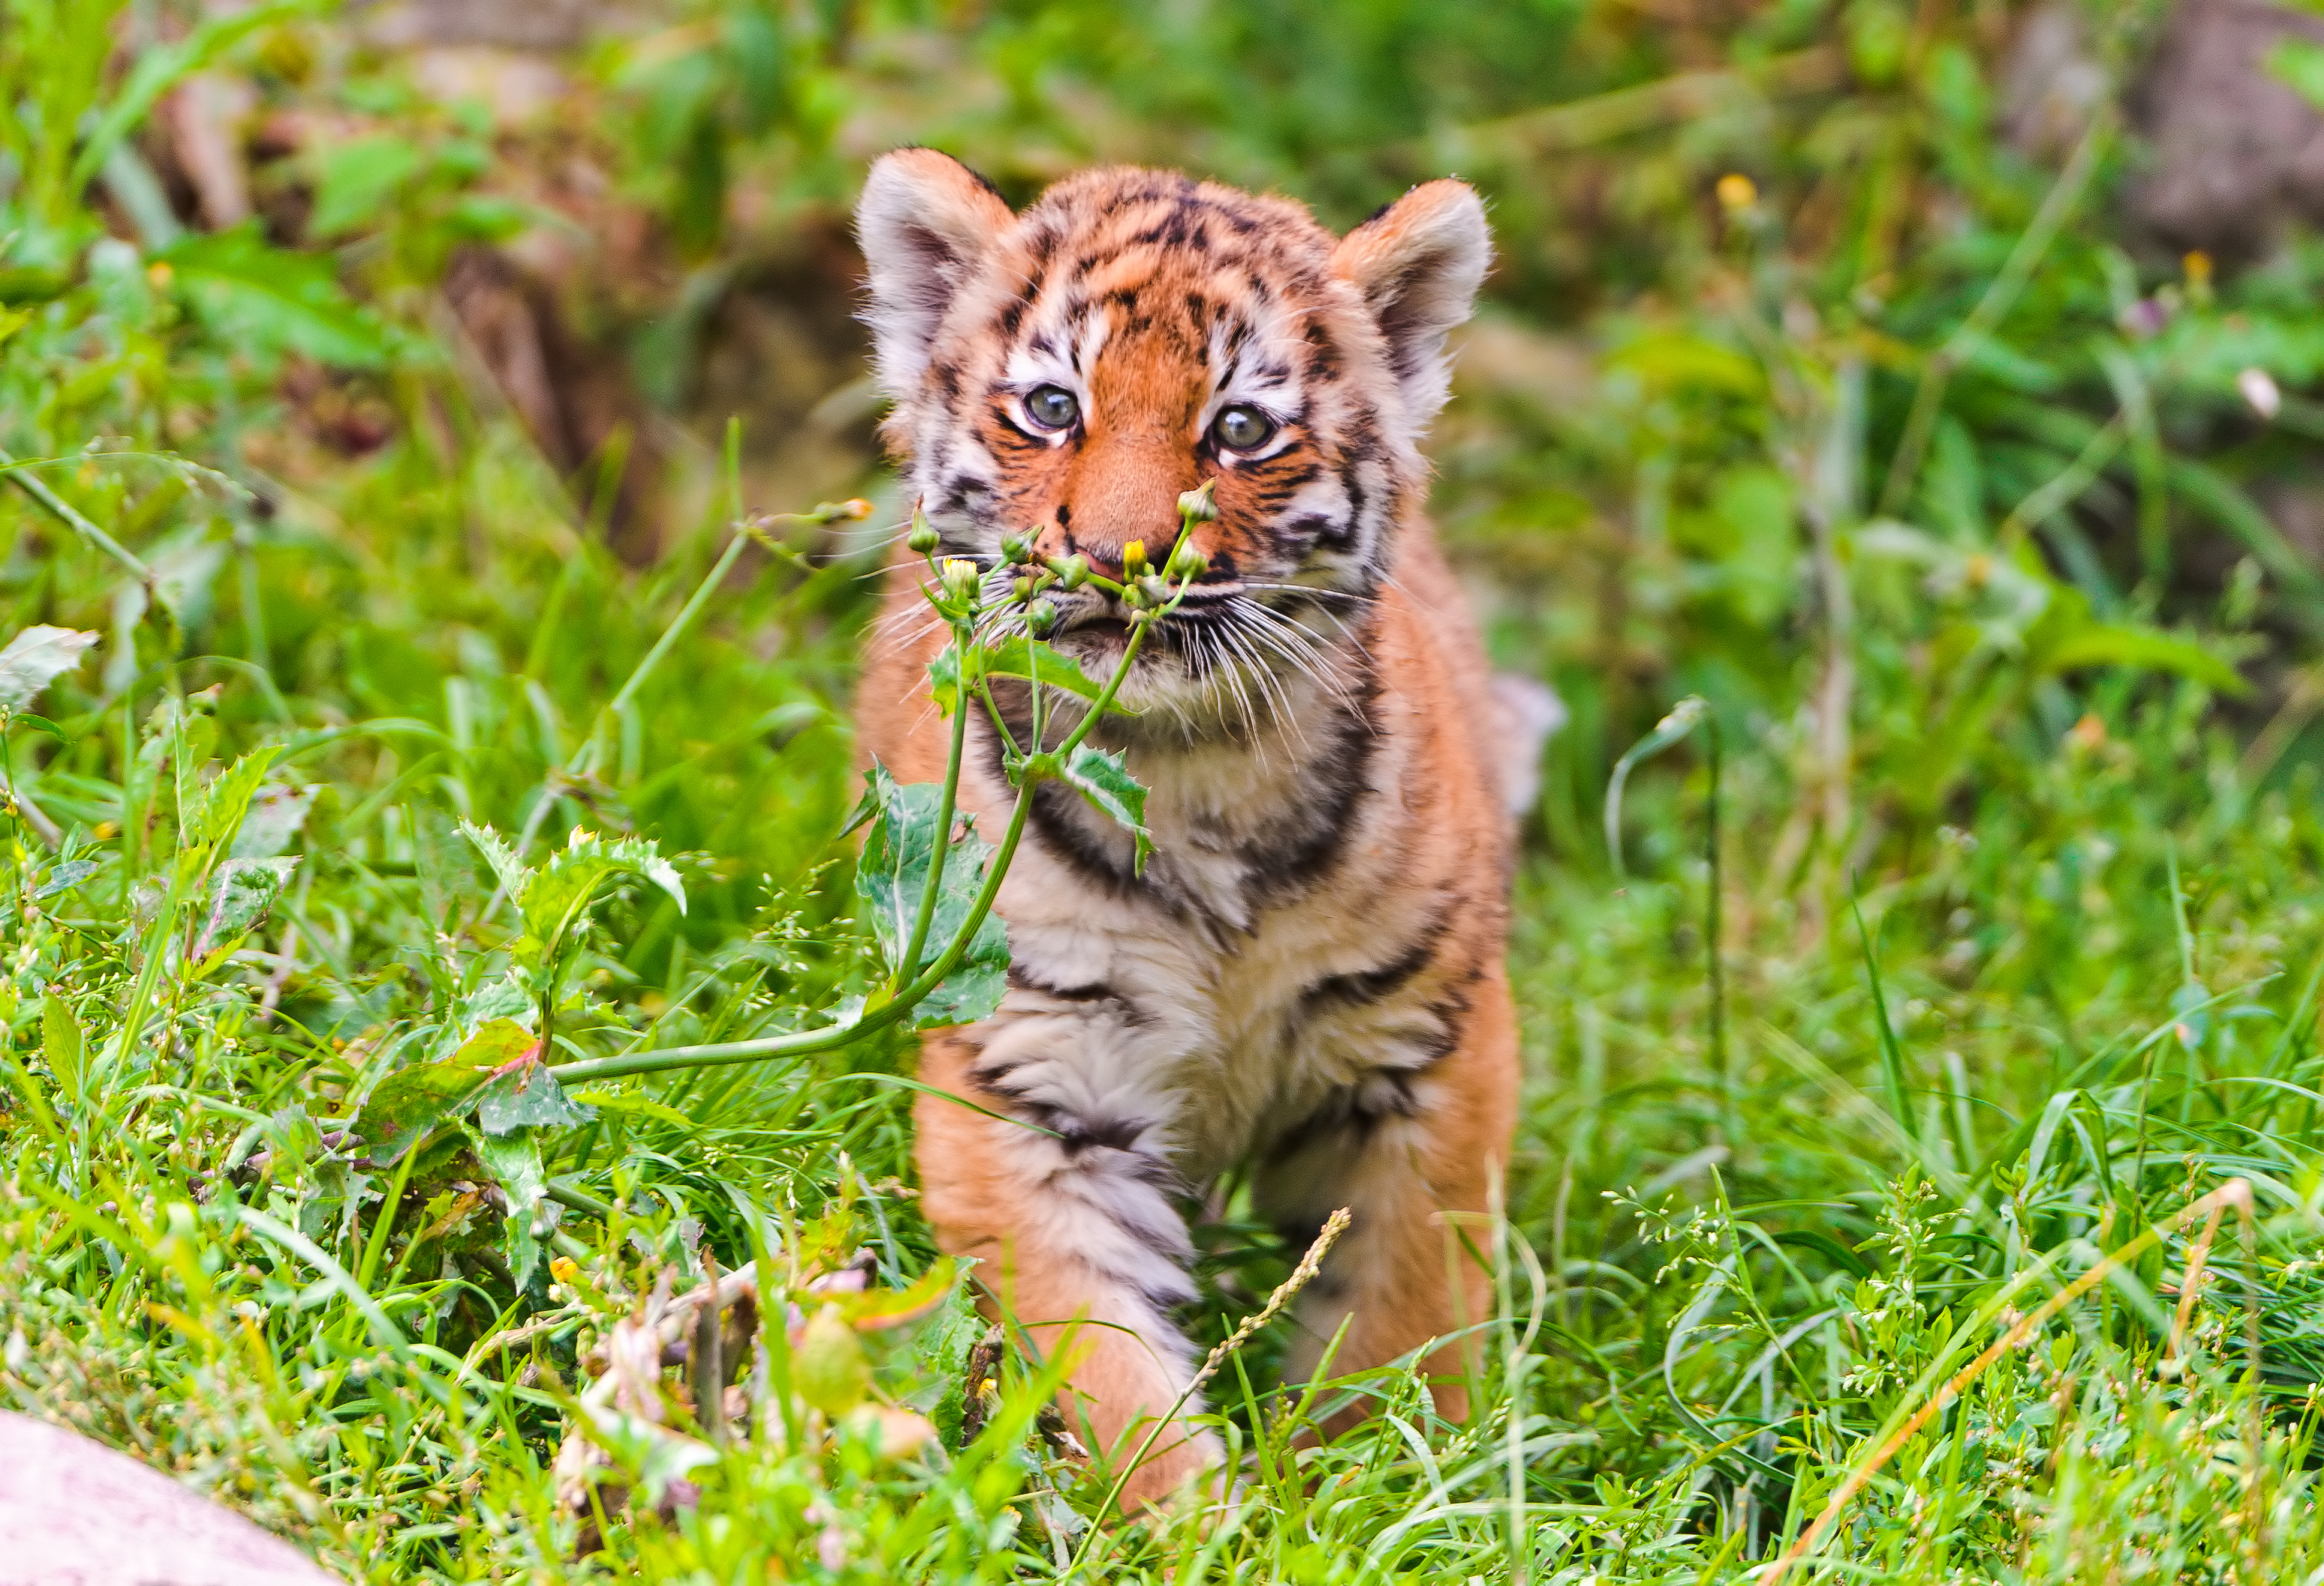 的小老虎1080x1920分辨率下载,野外觅食的小老虎,图片,壁纸,动物